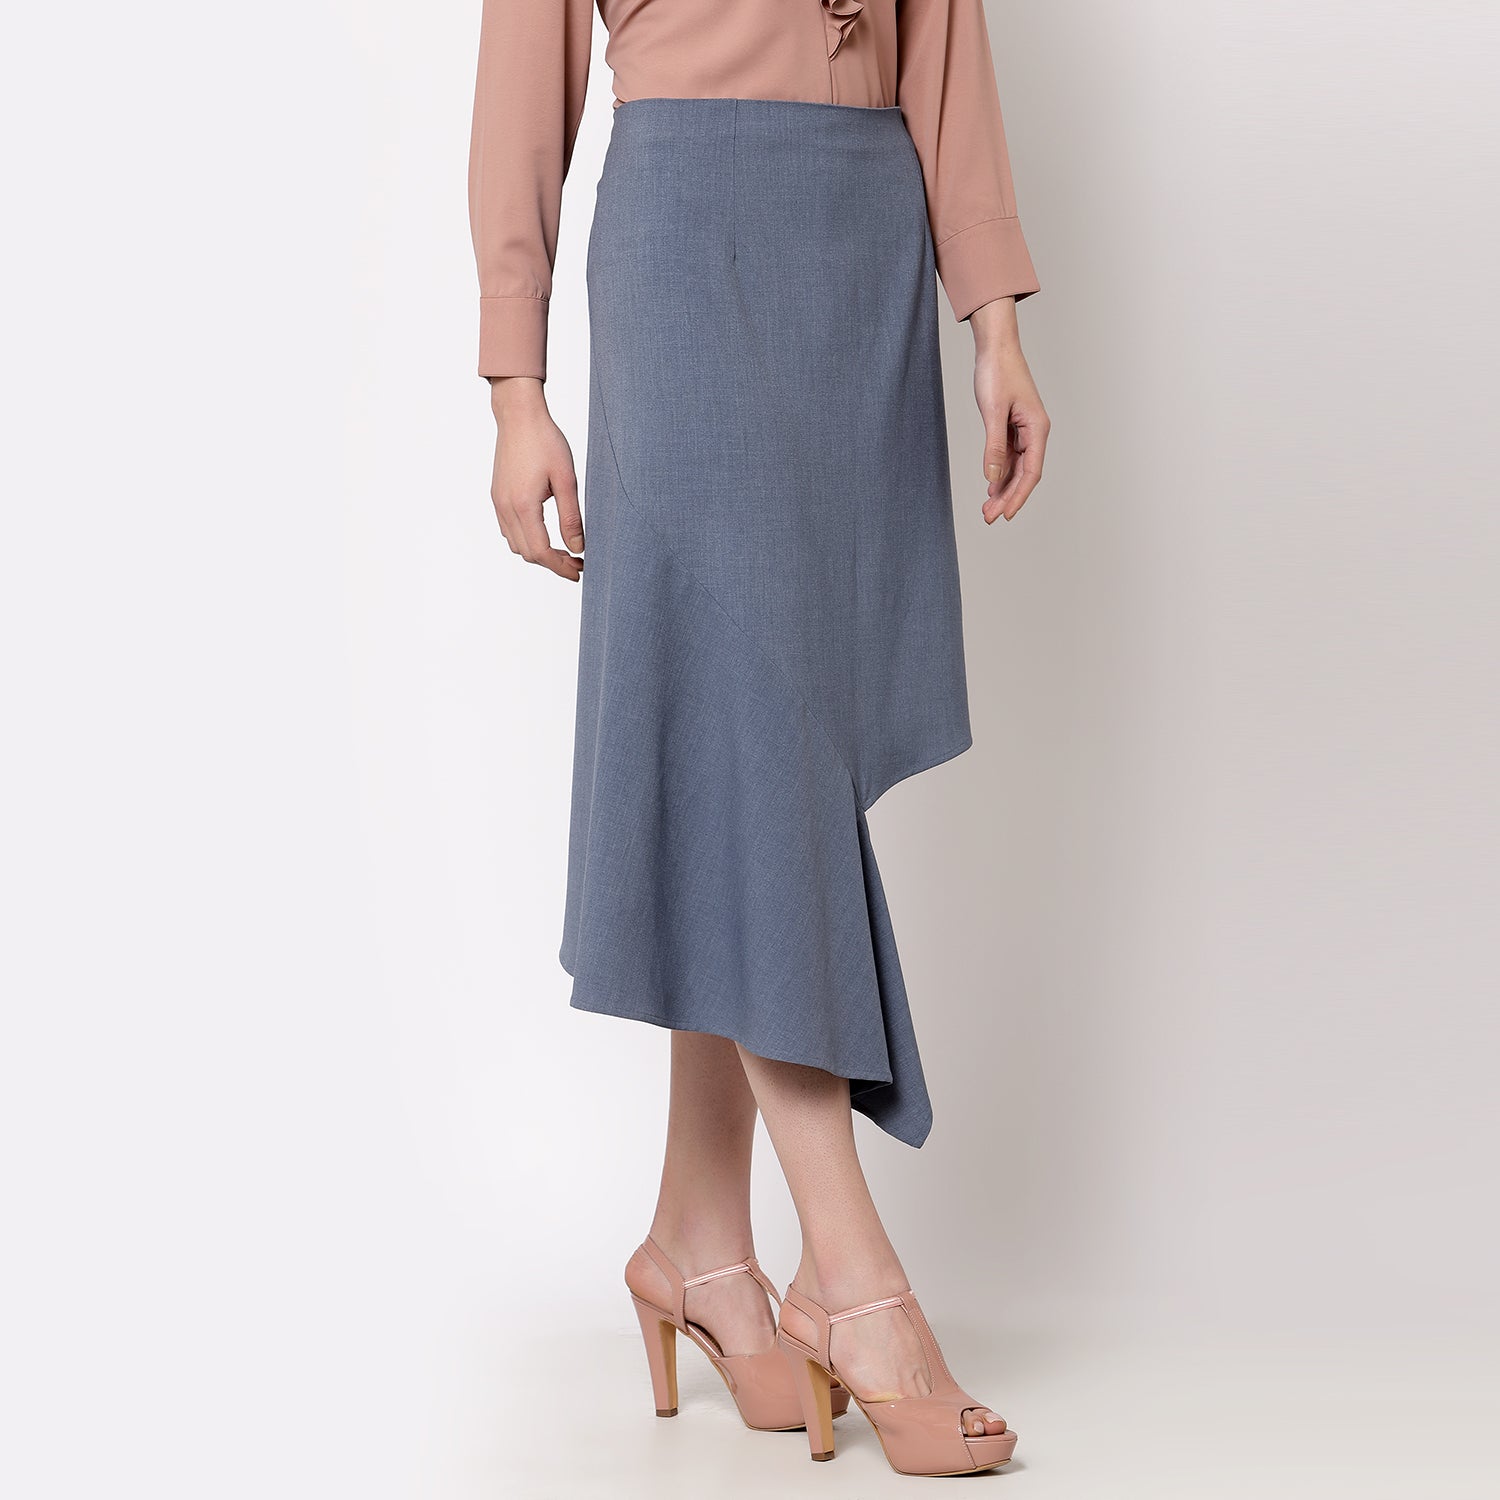 Blue Asymmtrical Skirt